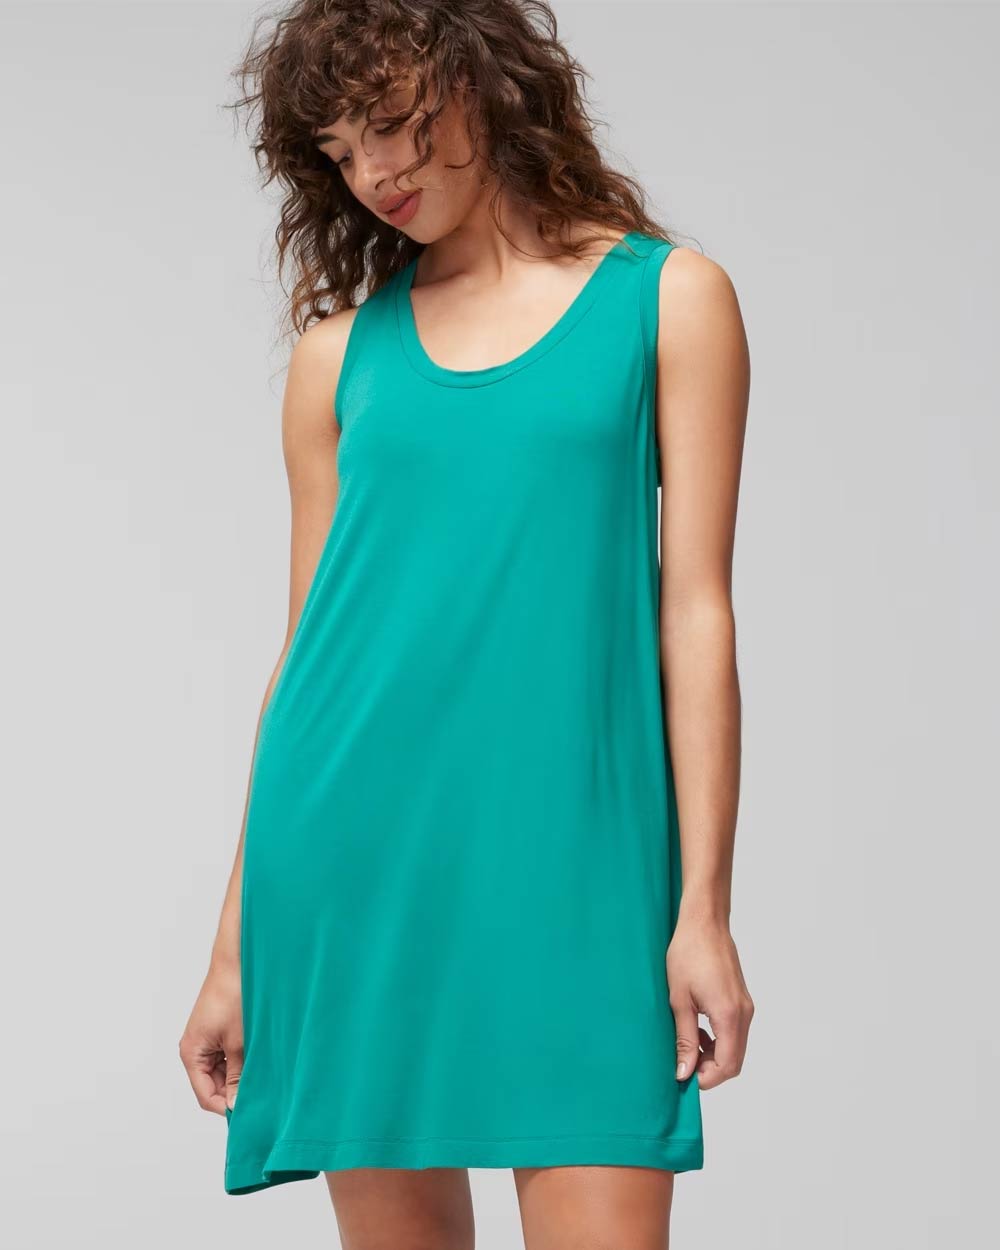 Soma<sup class=st-superscript>®</sup> women’s model wearing a teal green tank sleepshirt. 